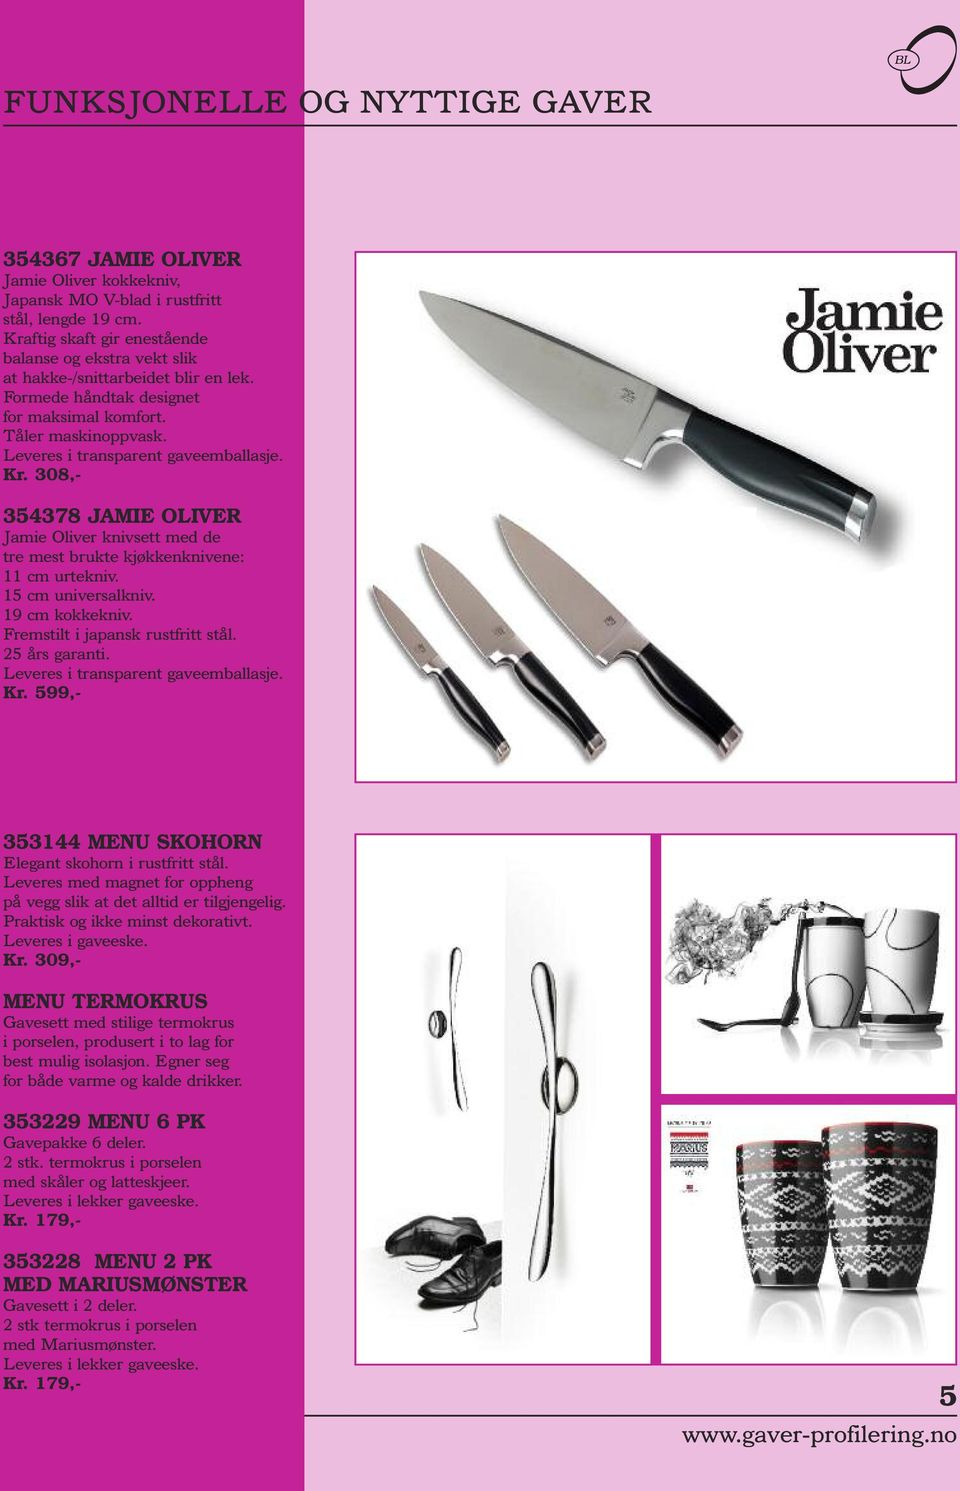 Kr. 308,- 354378 JAMIE OLIVER Jamie Oliver knivsett med de tre mest brukte kjøkkenknivene: 11 cm urtekniv. 15 cm universalkniv. 19 cm kokkekniv. Fremstilt i japansk rustfritt stål. 25 års garanti.